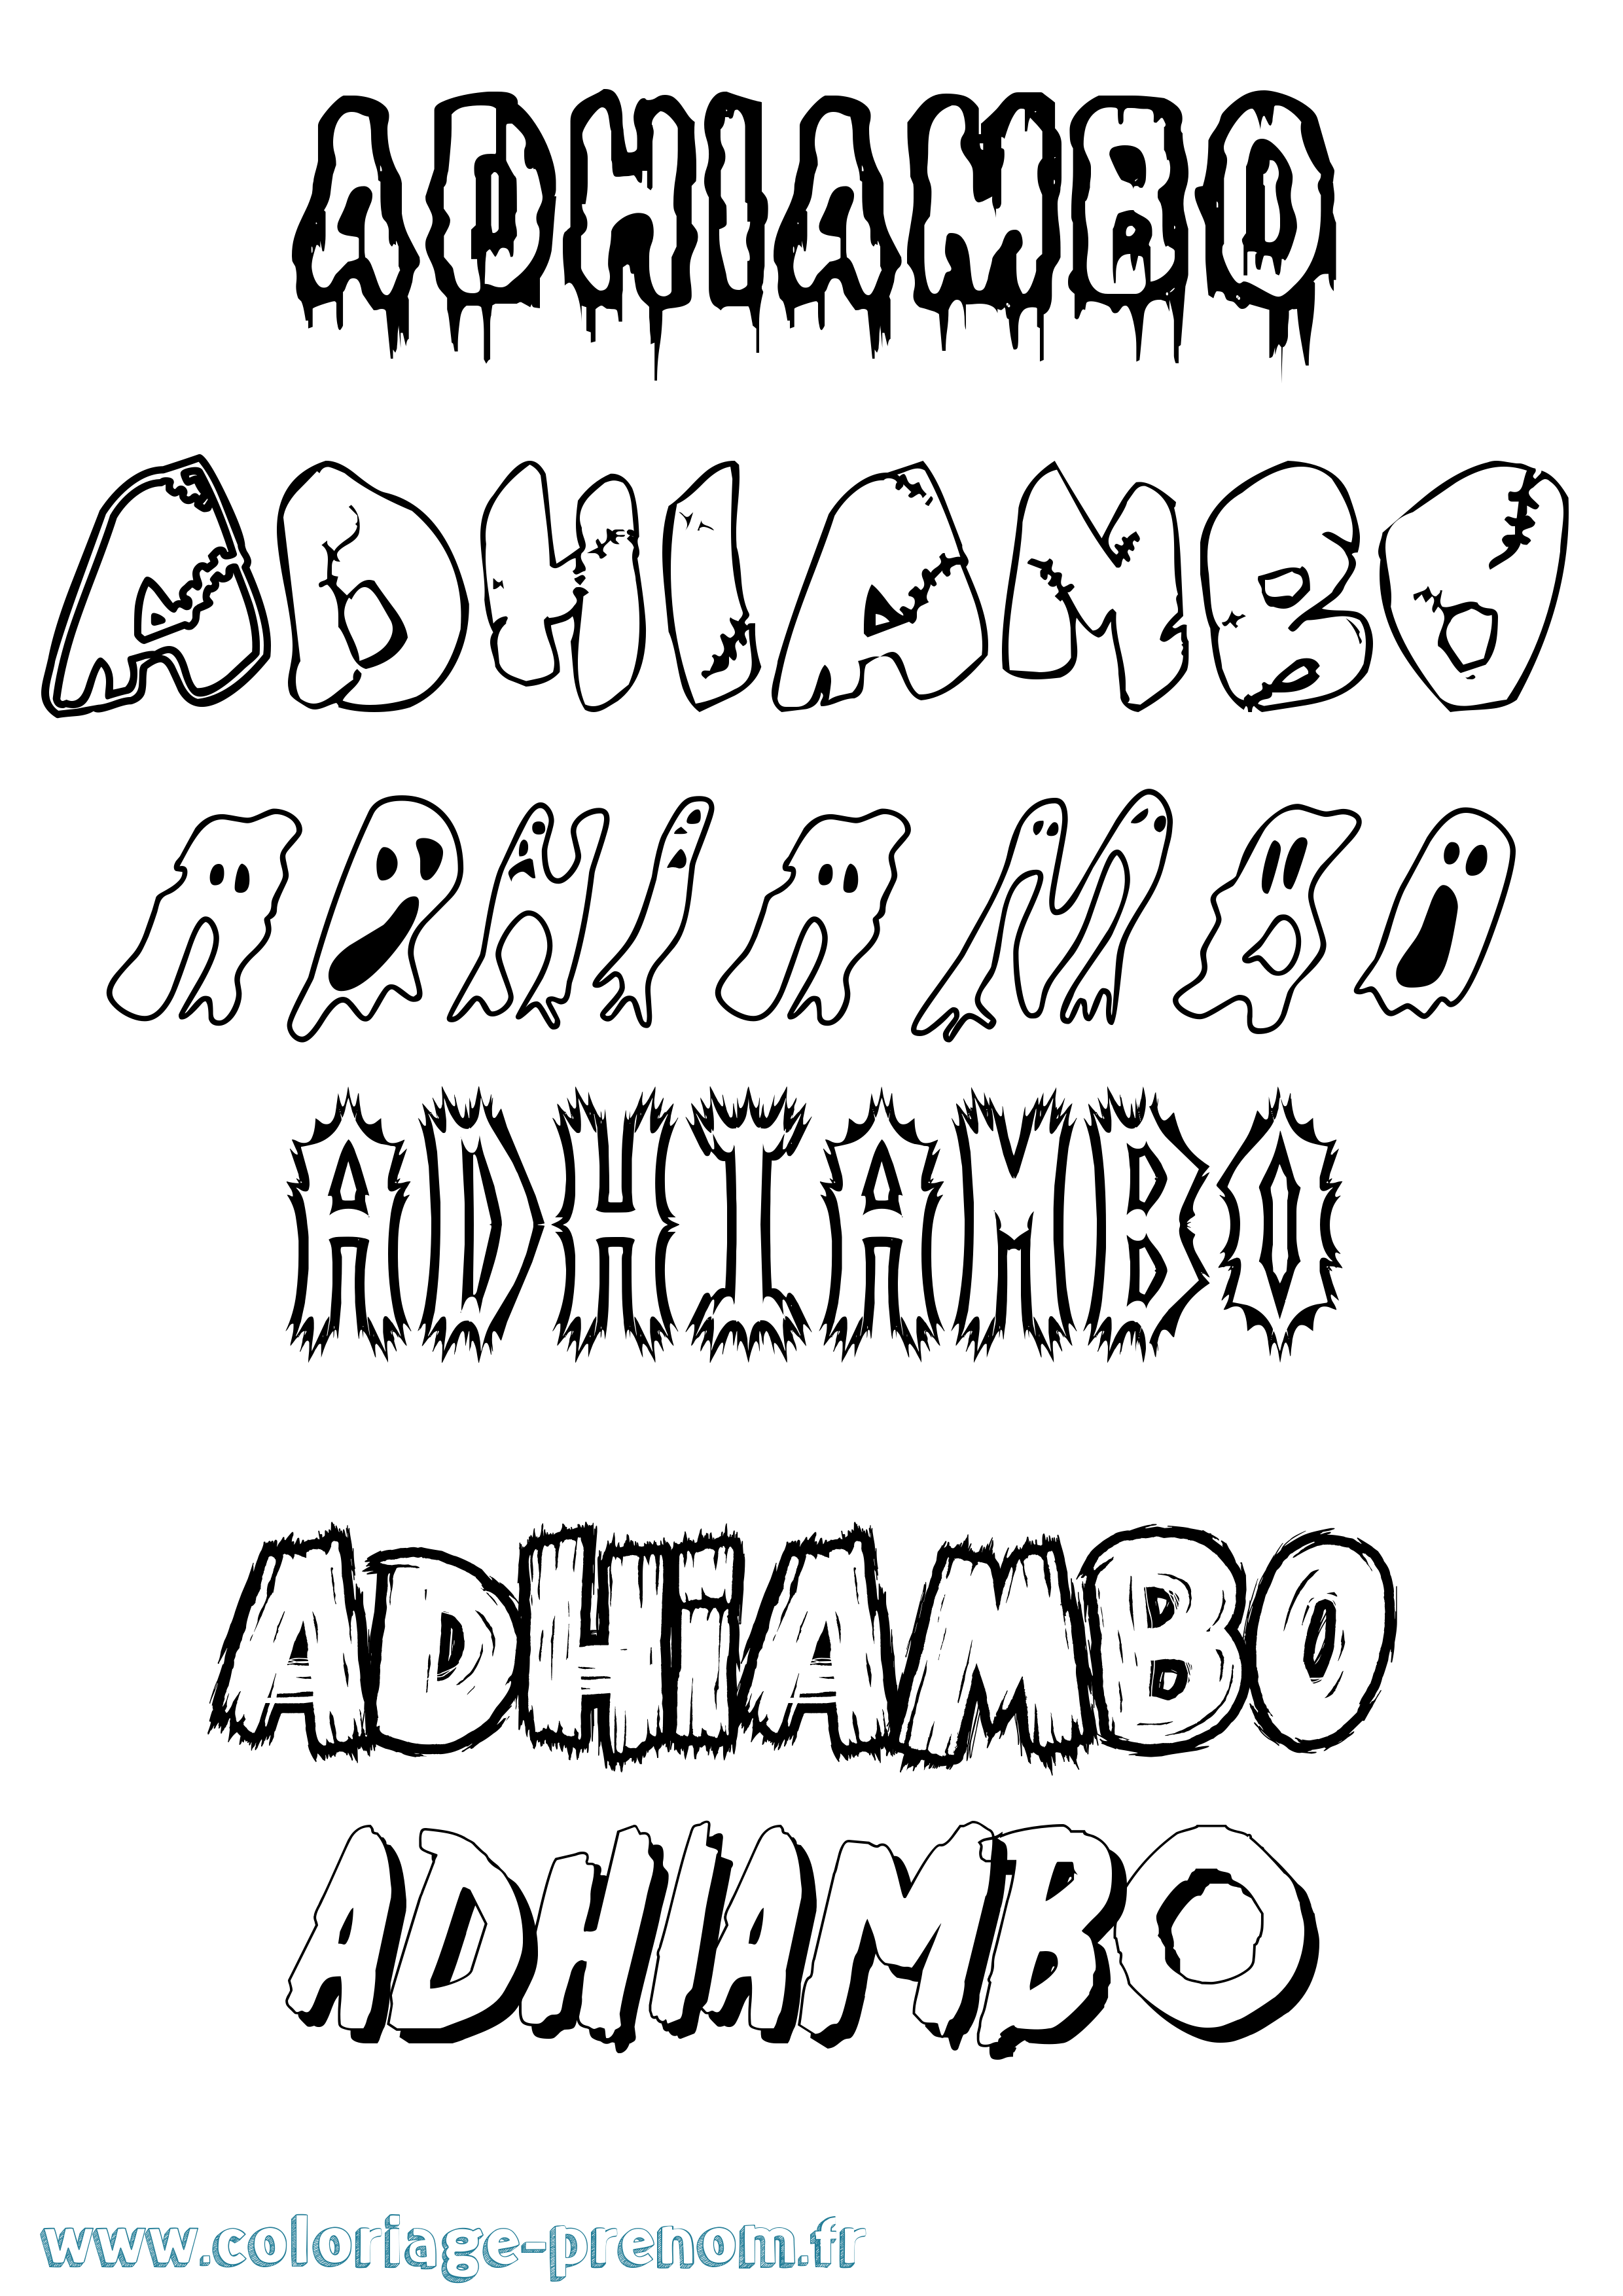 Coloriage prénom Adhiambo Frisson